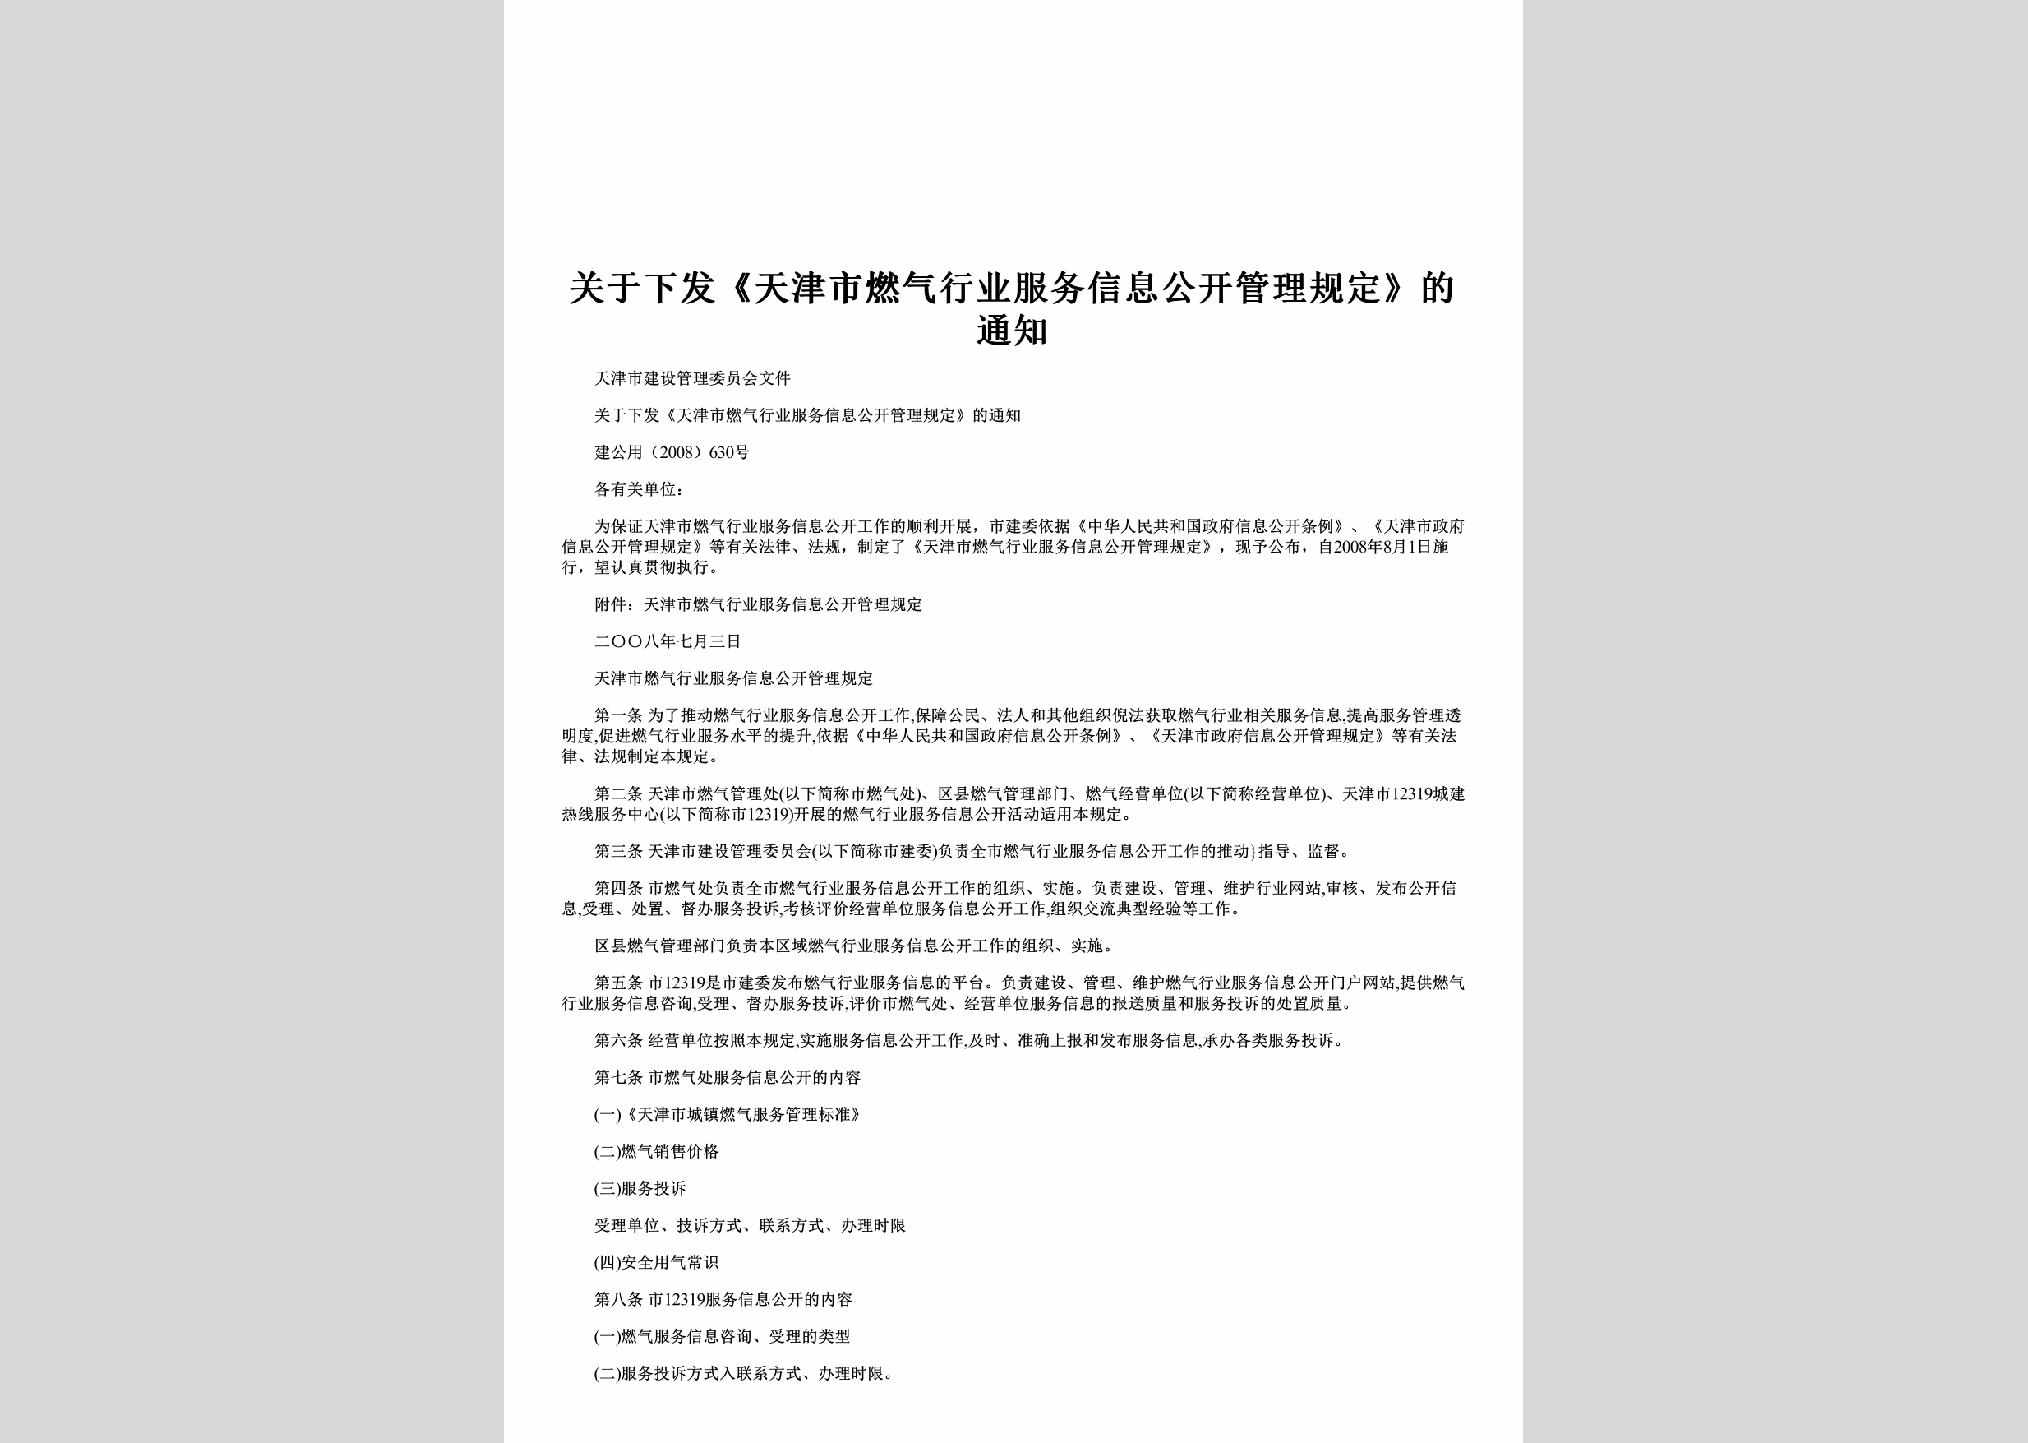 建公用[2008]630号：关于下发《天津市燃气行业服务信息公开管理规定》的通知